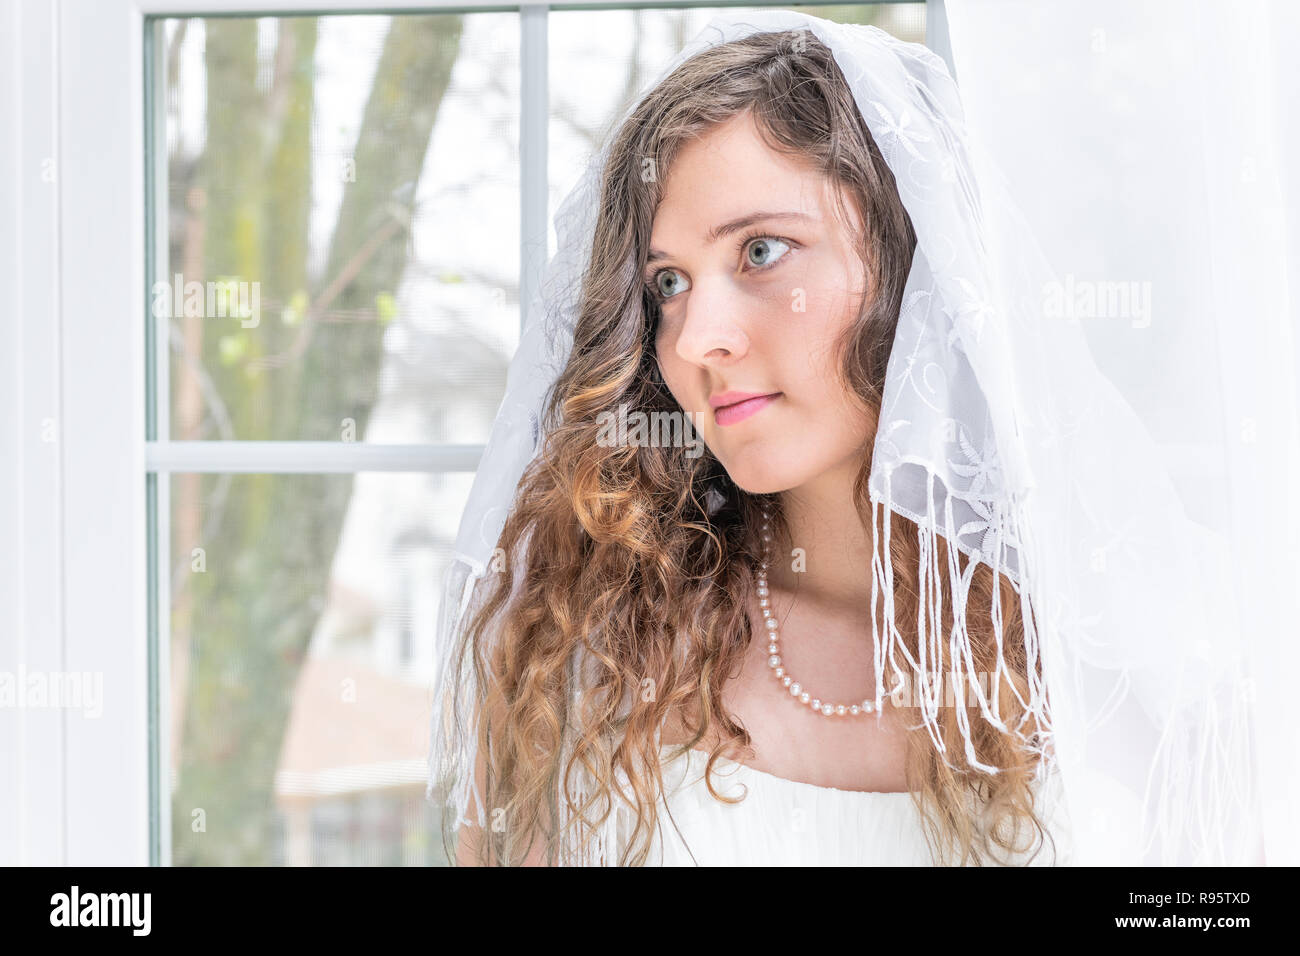 Closeup Portrait von jungen weiblichen Person, Frau, Braut im Brautkleid, Schleier, Schal, Gesicht, Perlenkette, Fenster, weiße Vorhänge, suchen Stockfoto